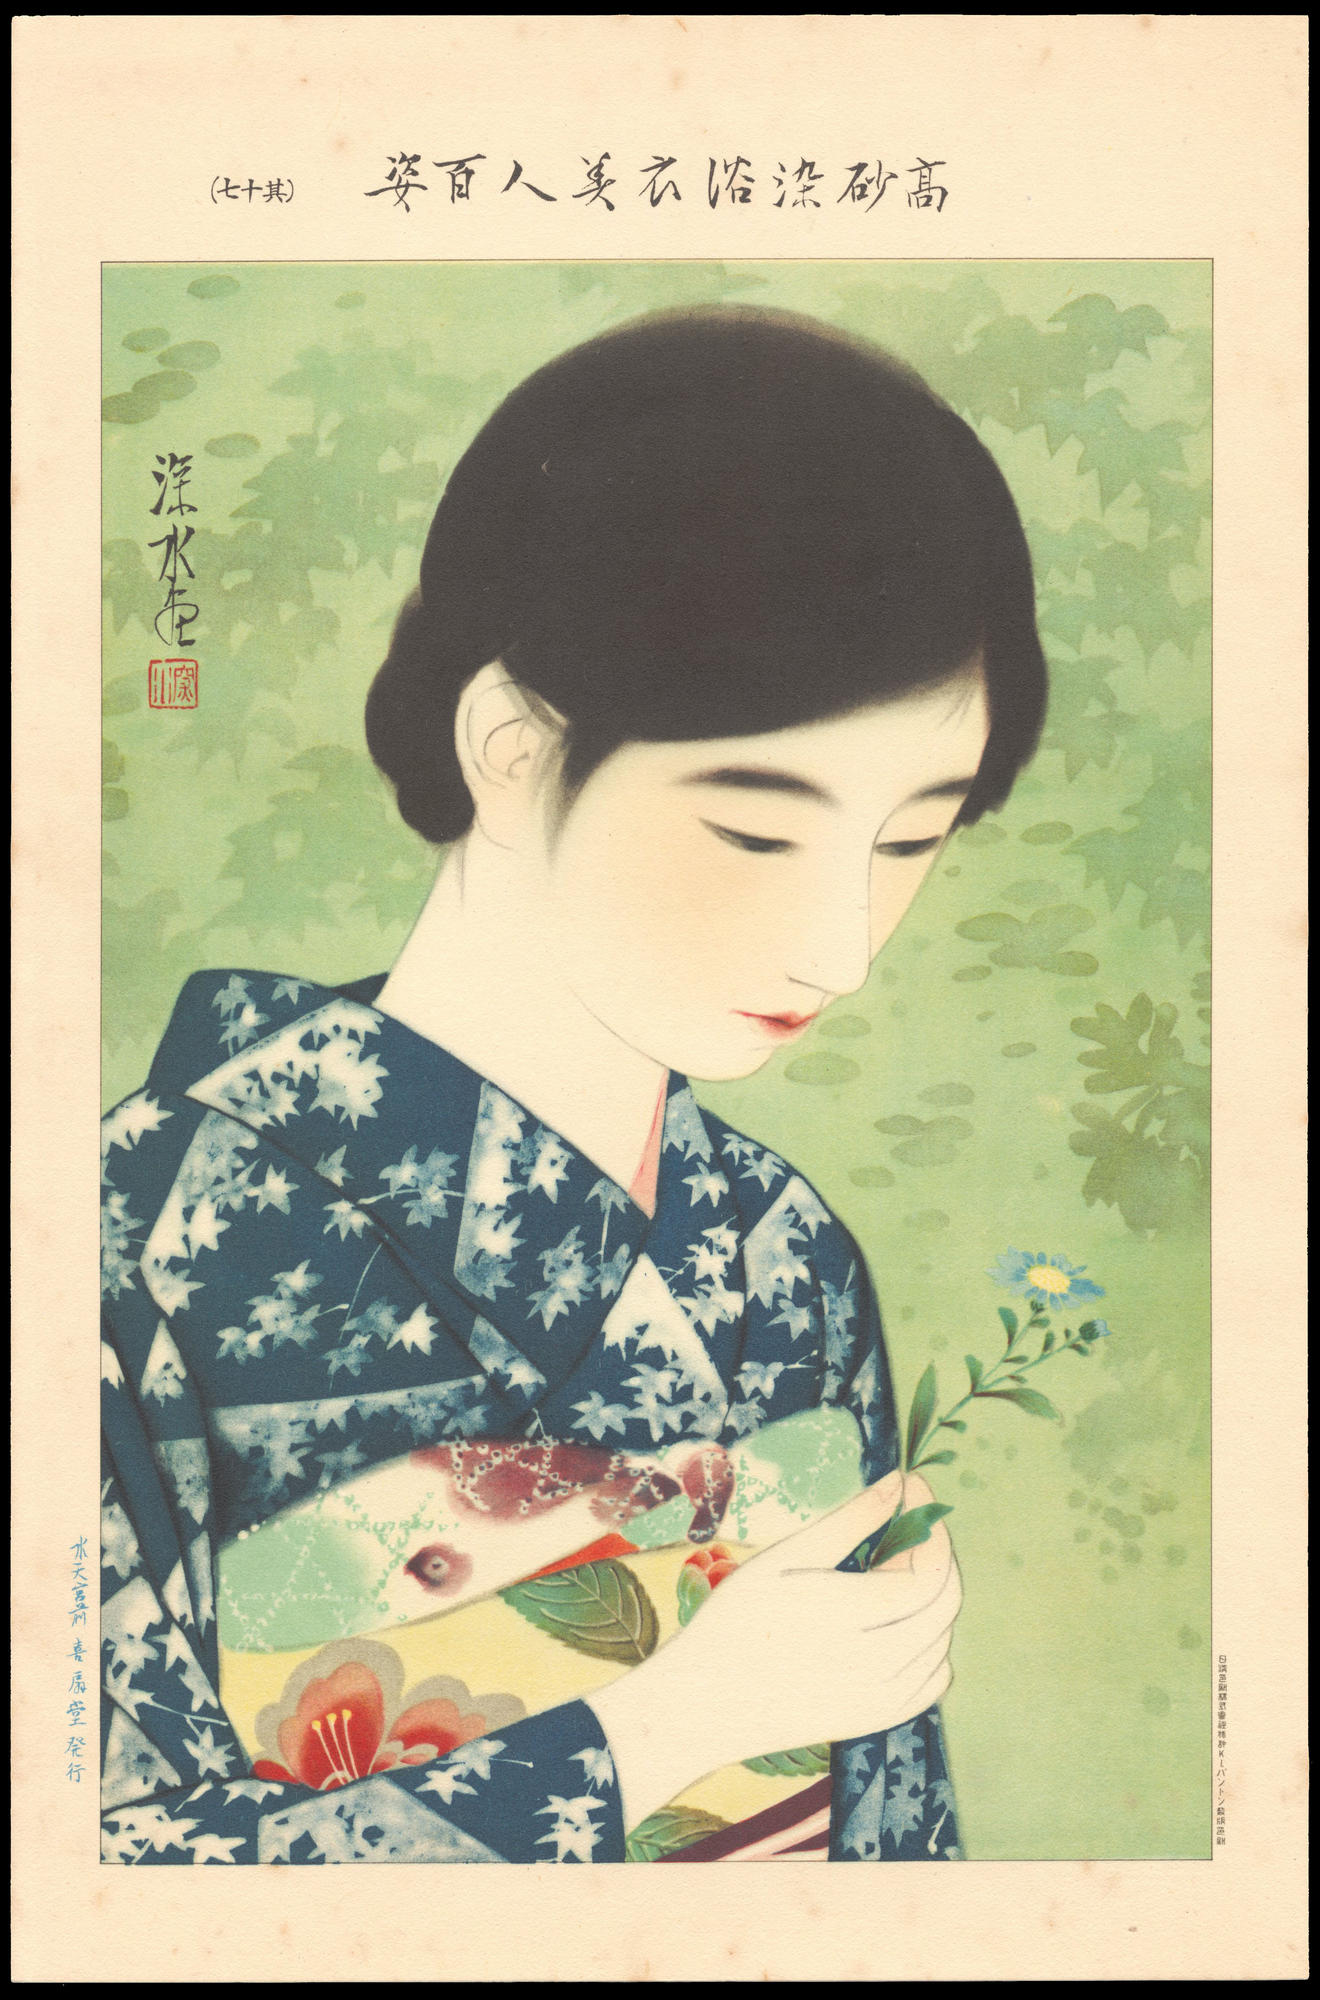 伊東深水: No. 17- Summer Flowers (1) - Ohmi Gallery - 浮世絵検索